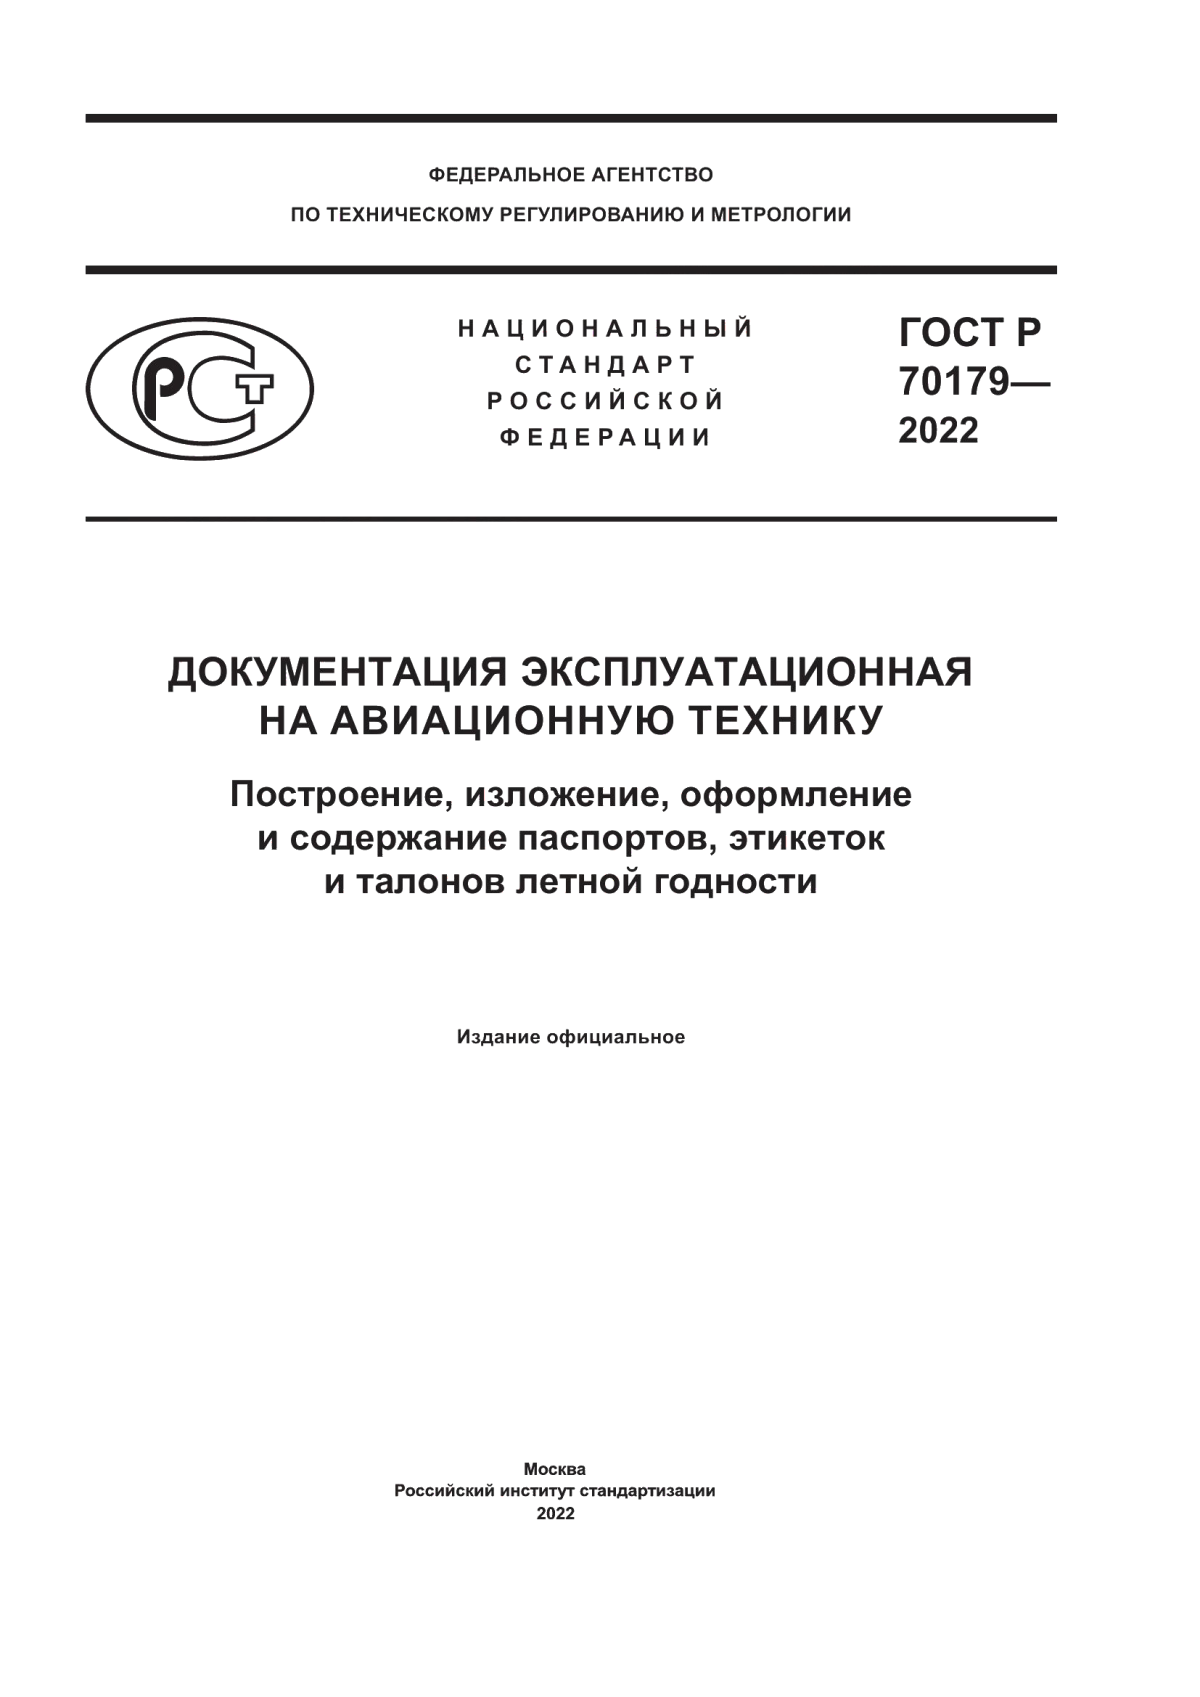 ГОСТ Р 70179-2022 Документация эксплуатационная на авиационную технику. Построение, изложение, оформление и содержание паспортов, этикеток и талонов летной годности